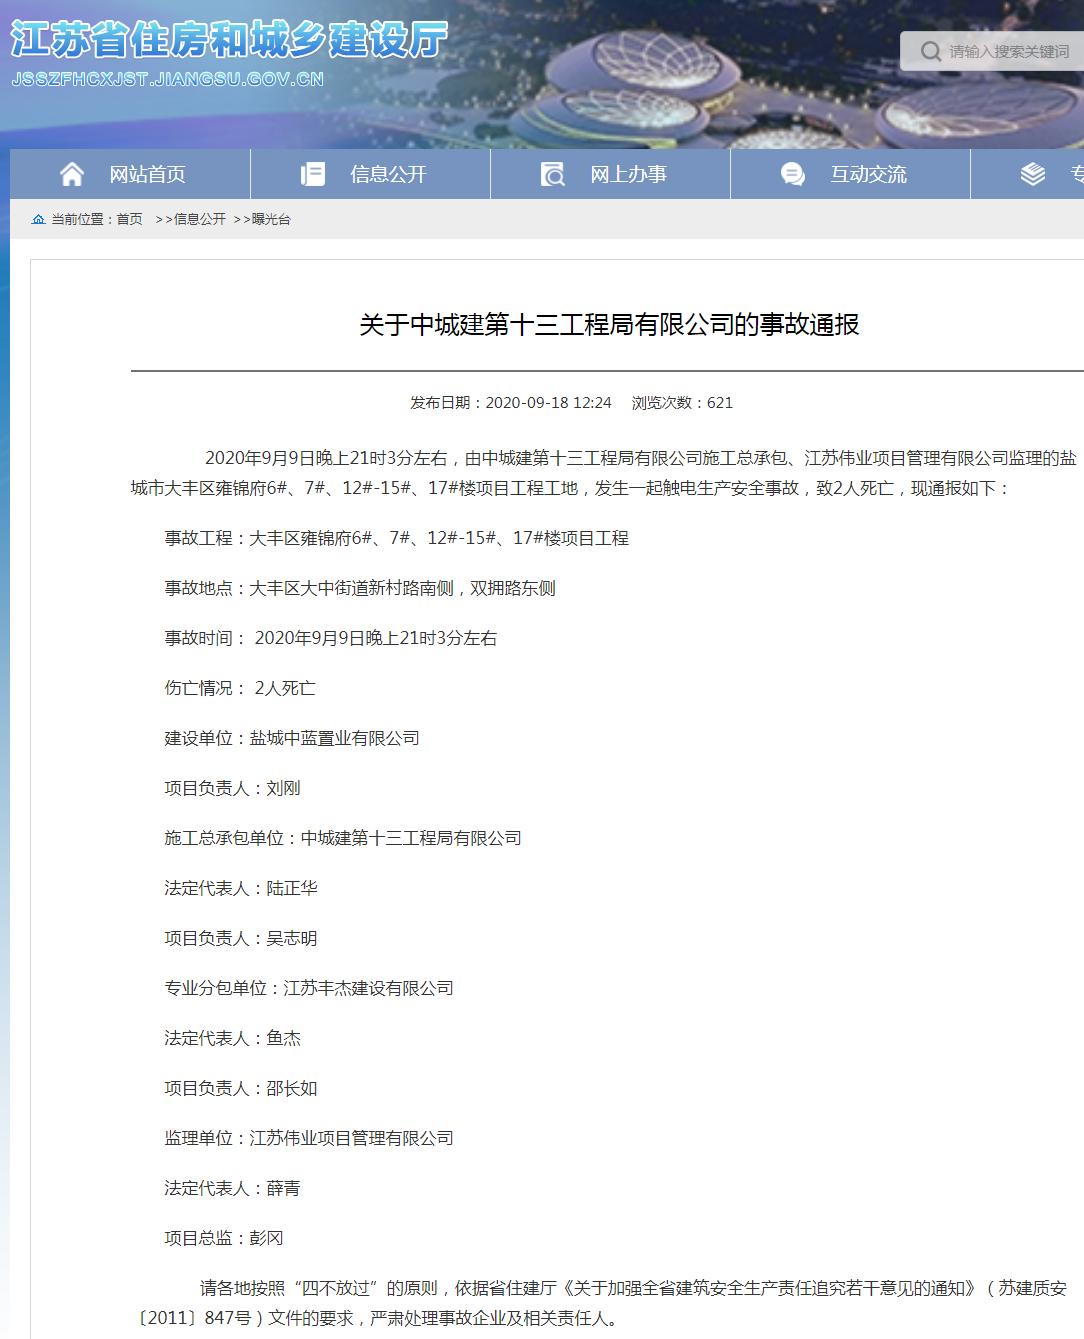 中城建第十三工程局有限公司盐城大丰区雍锦府项目发生事故 致2人死亡